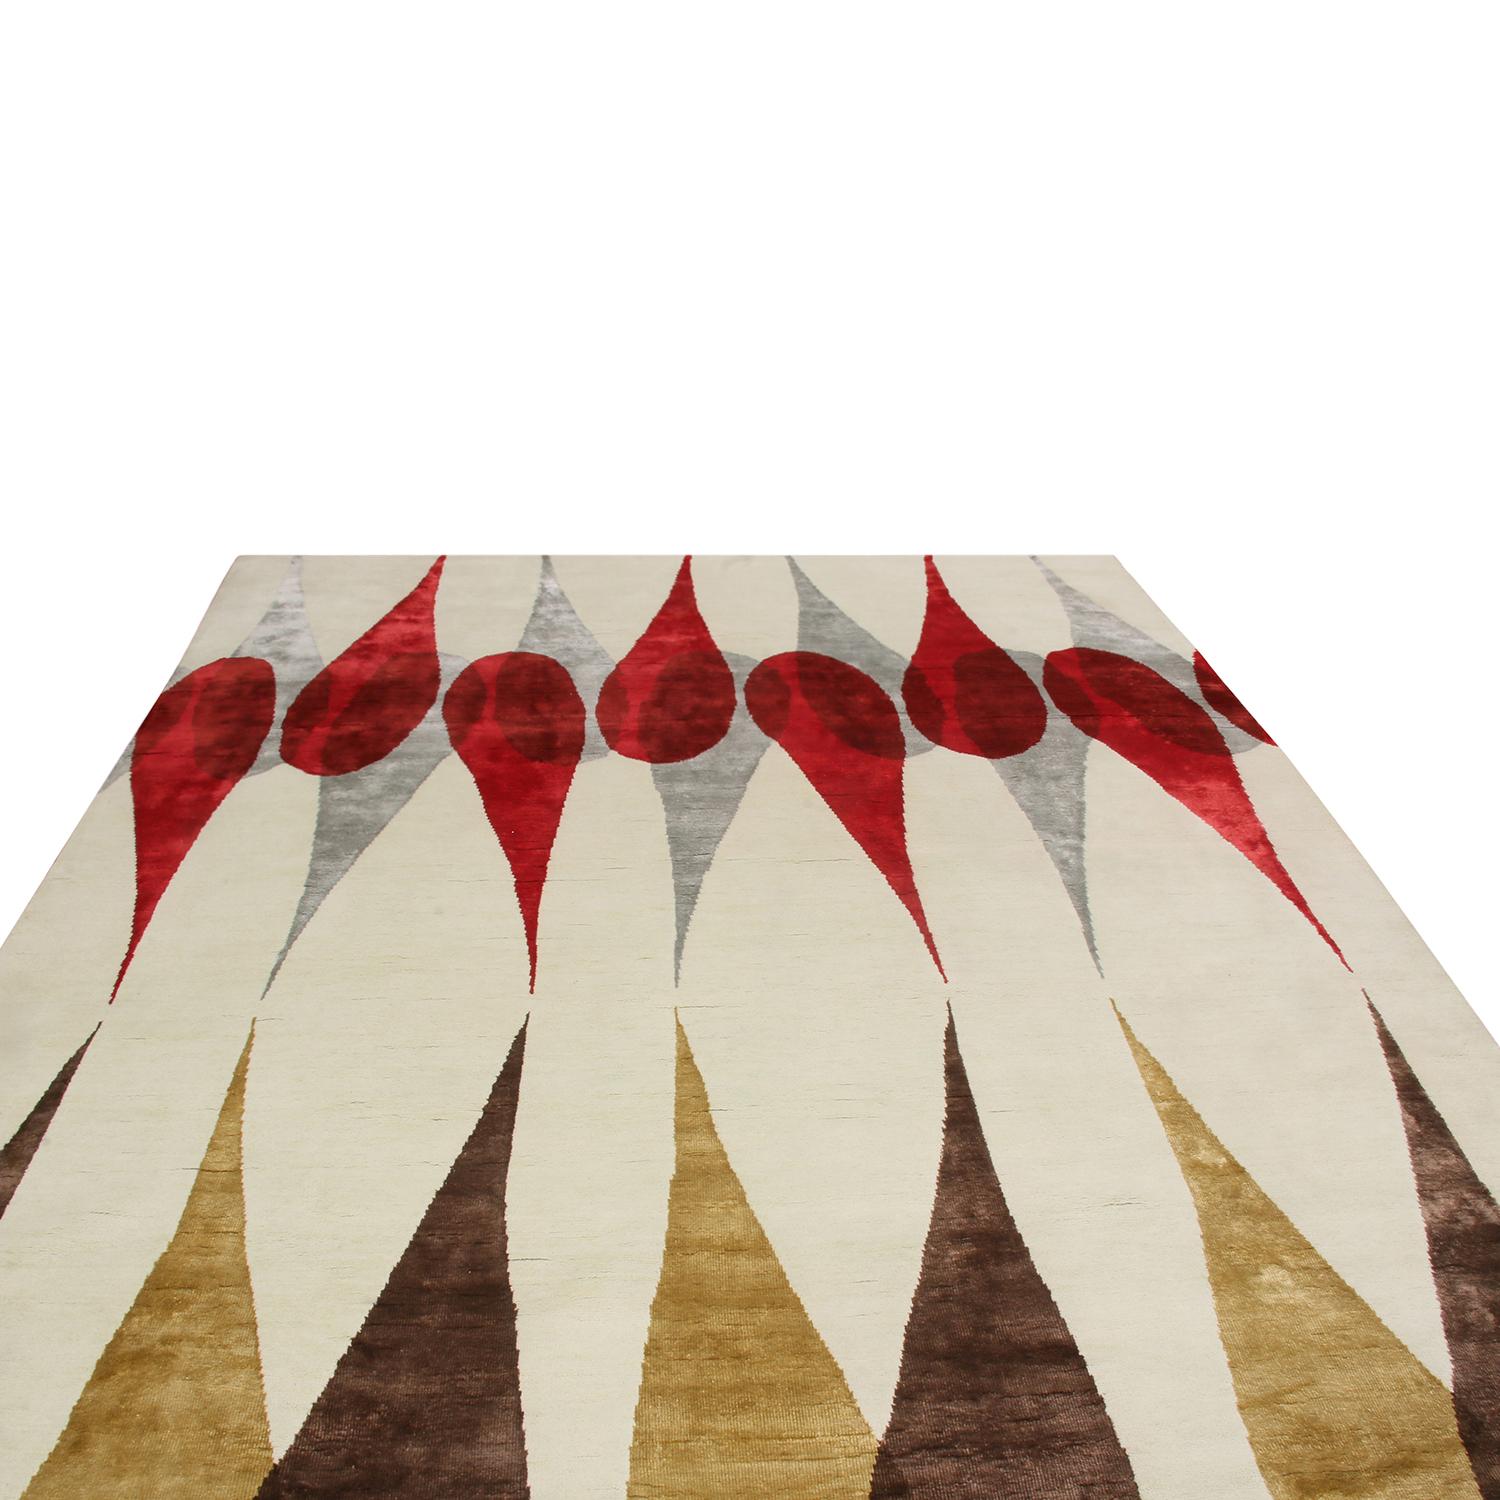 Eine 8x10 große Ergänzung der Mid-Century Modern-Teppichkollektion von Rug & Kilim in Zusammenarbeit mit den Werken von Campbell Laird.

Weiter zum Design 

Inspiriert von Lairds 